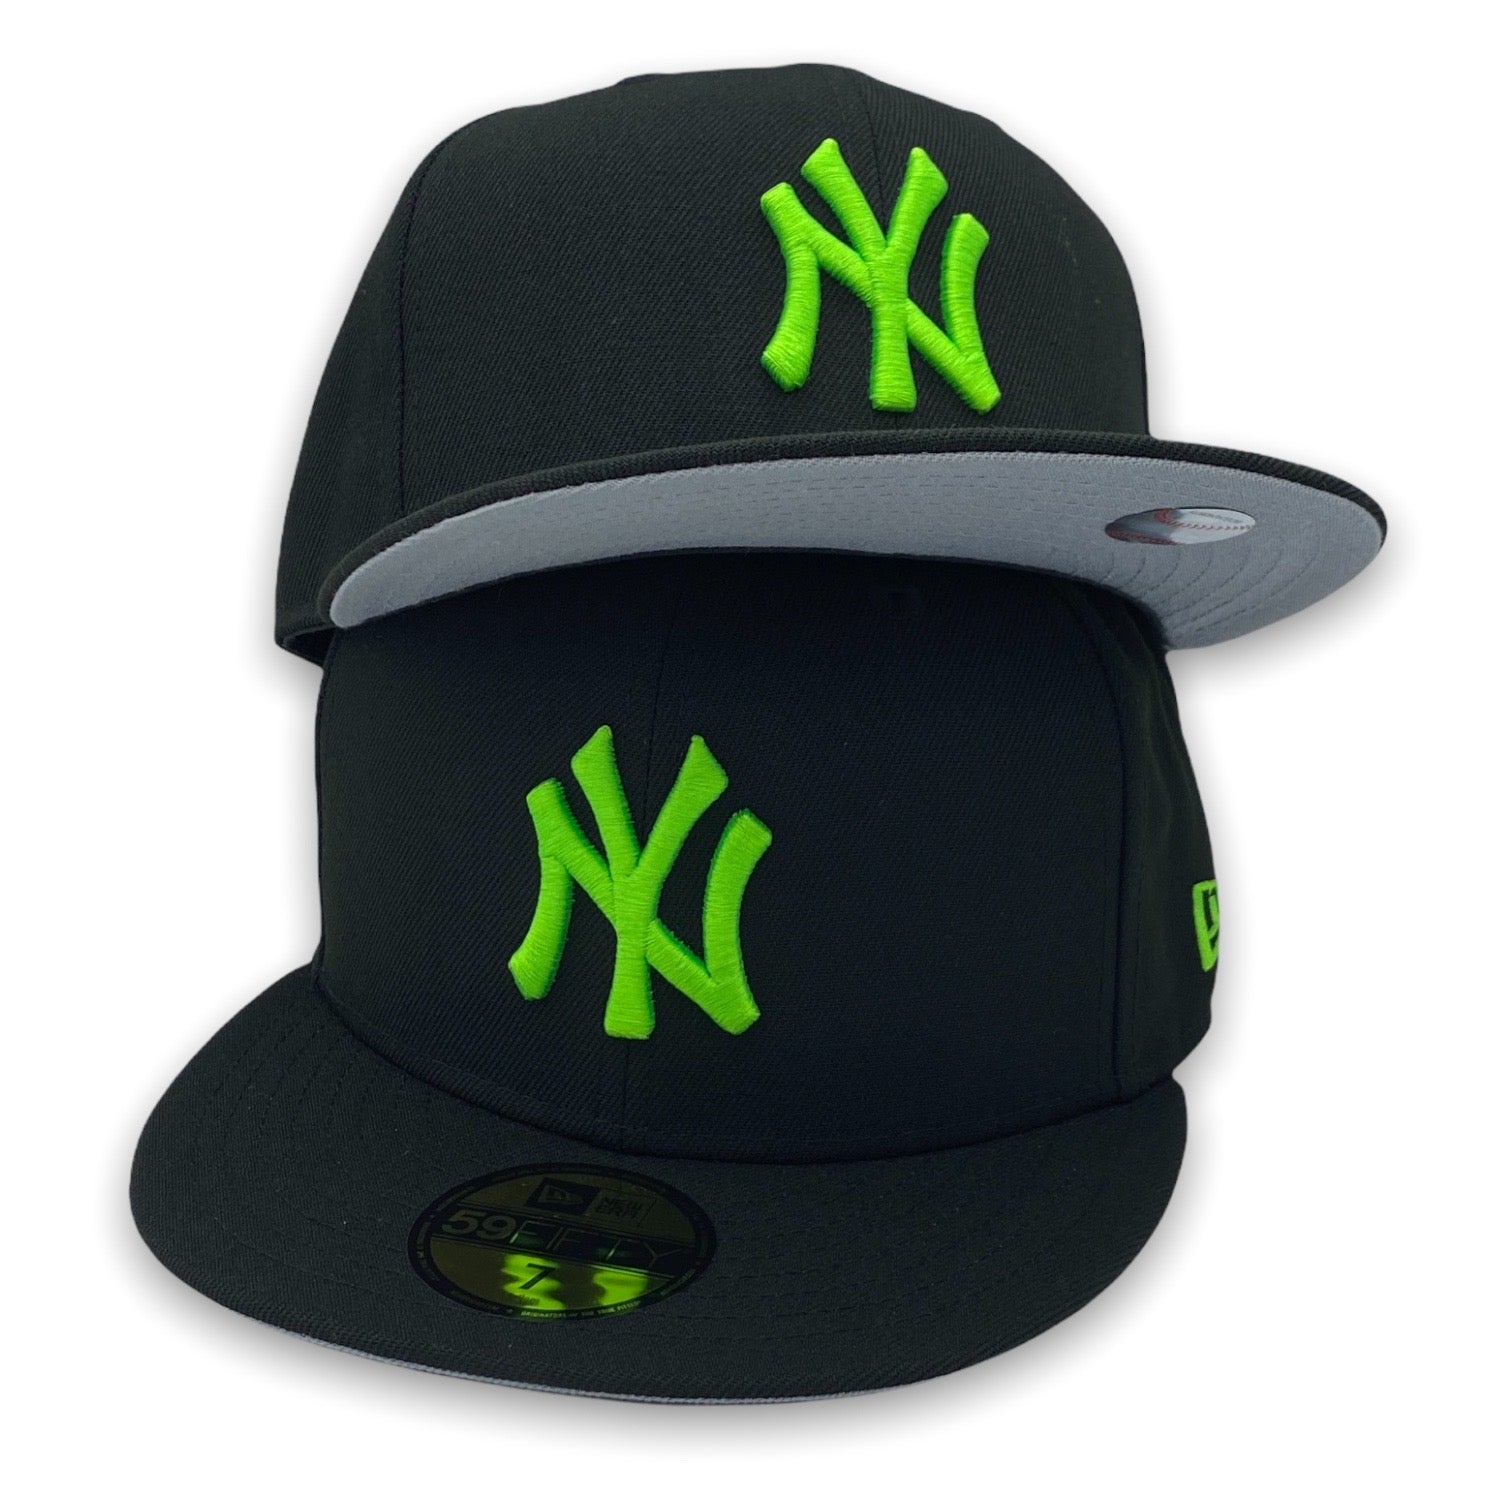 New Era New York Yankees Logo Sweatshirt, green and white